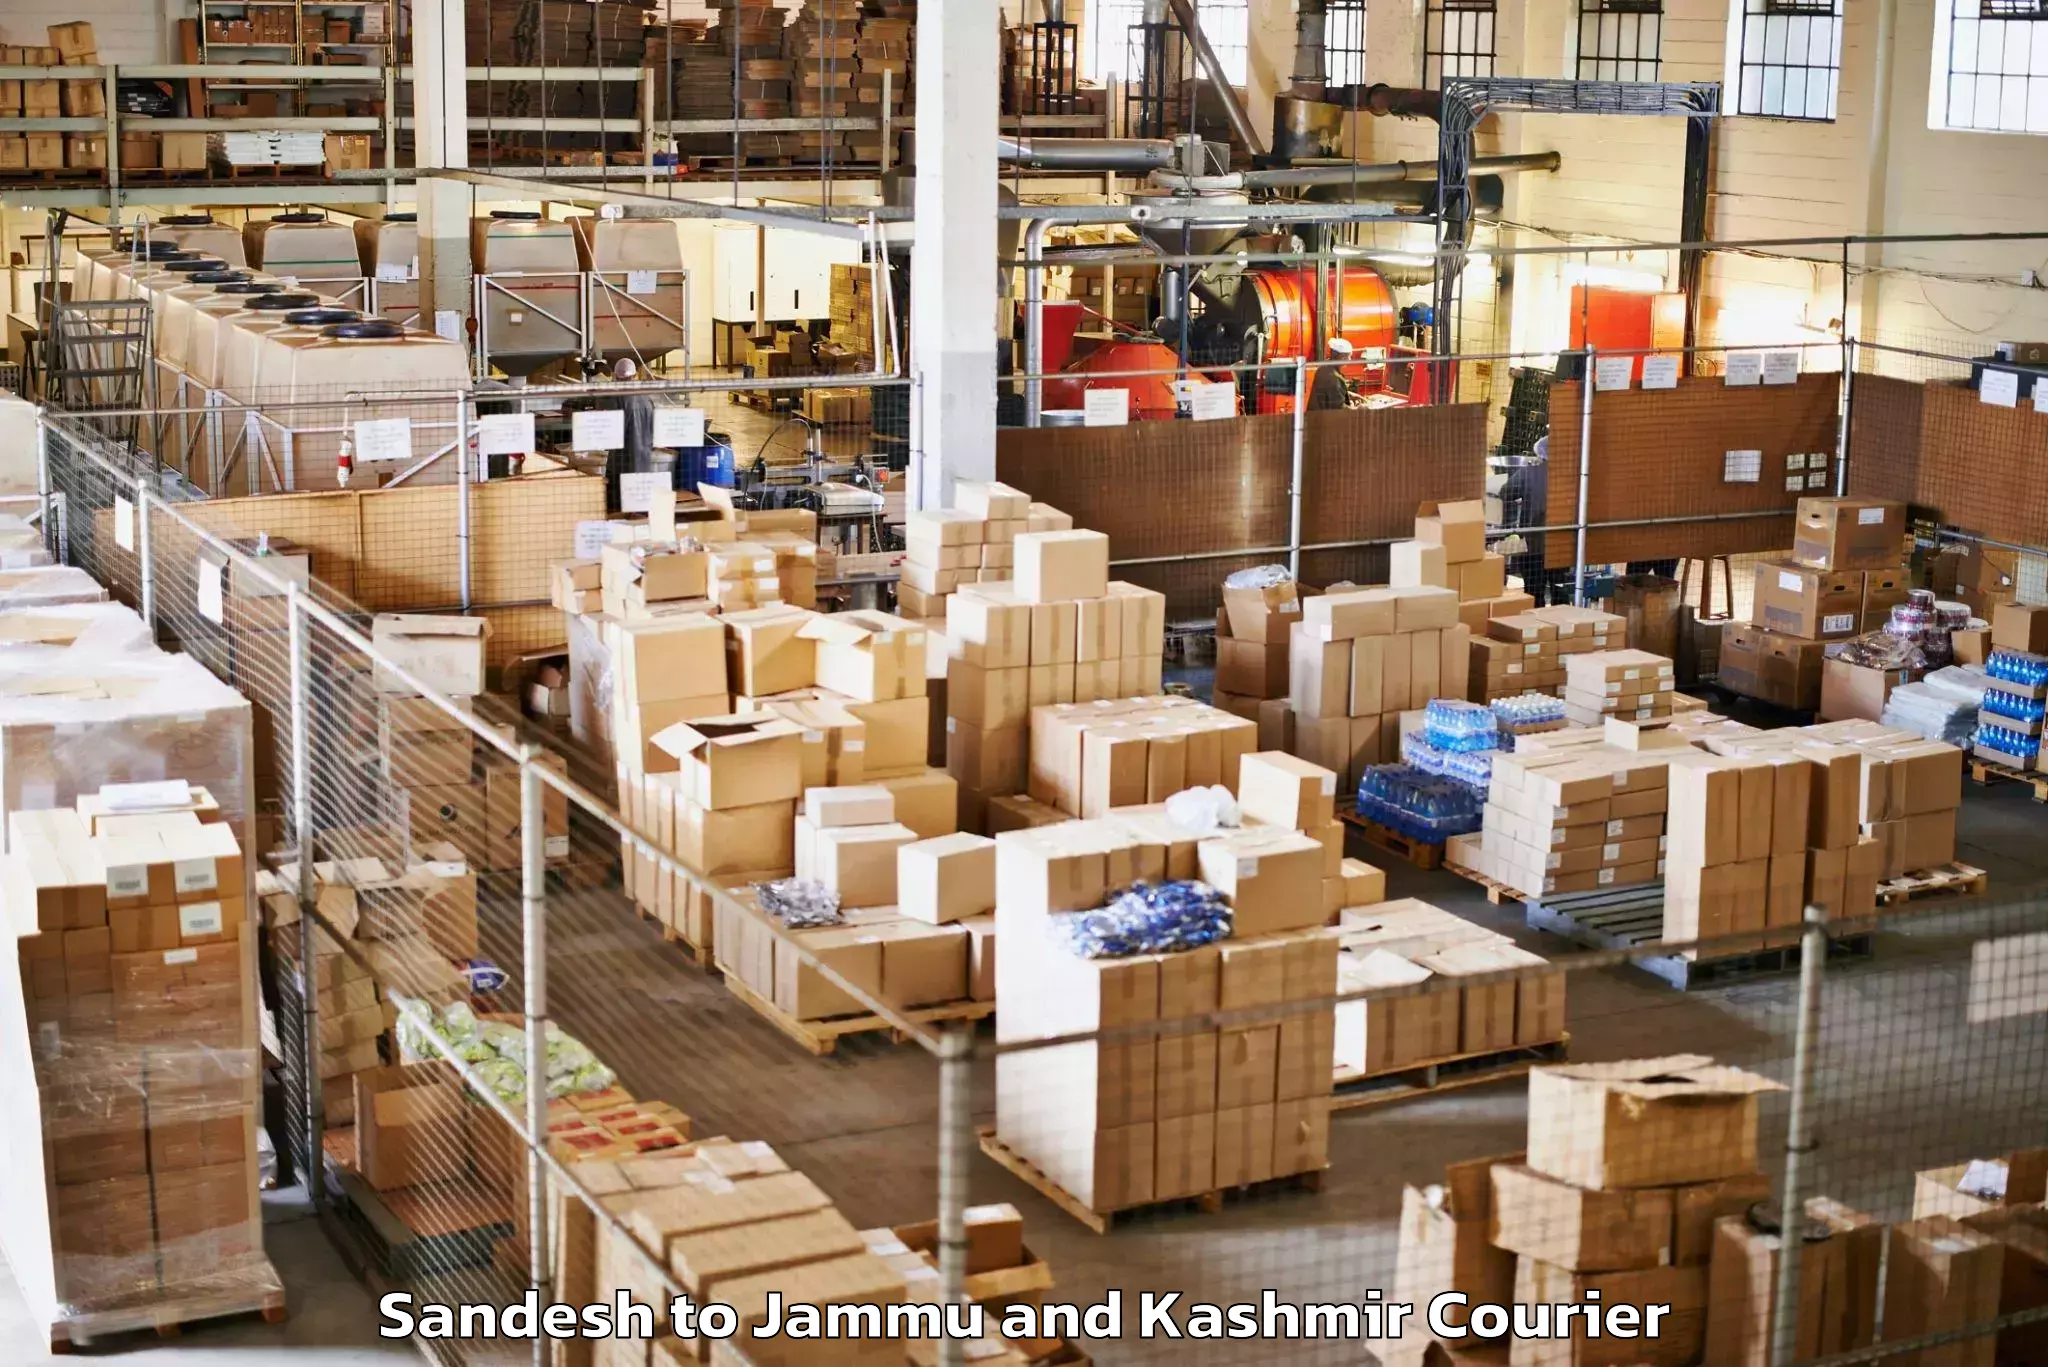 Luggage shipment strategy Sandesh to Jammu and Kashmir